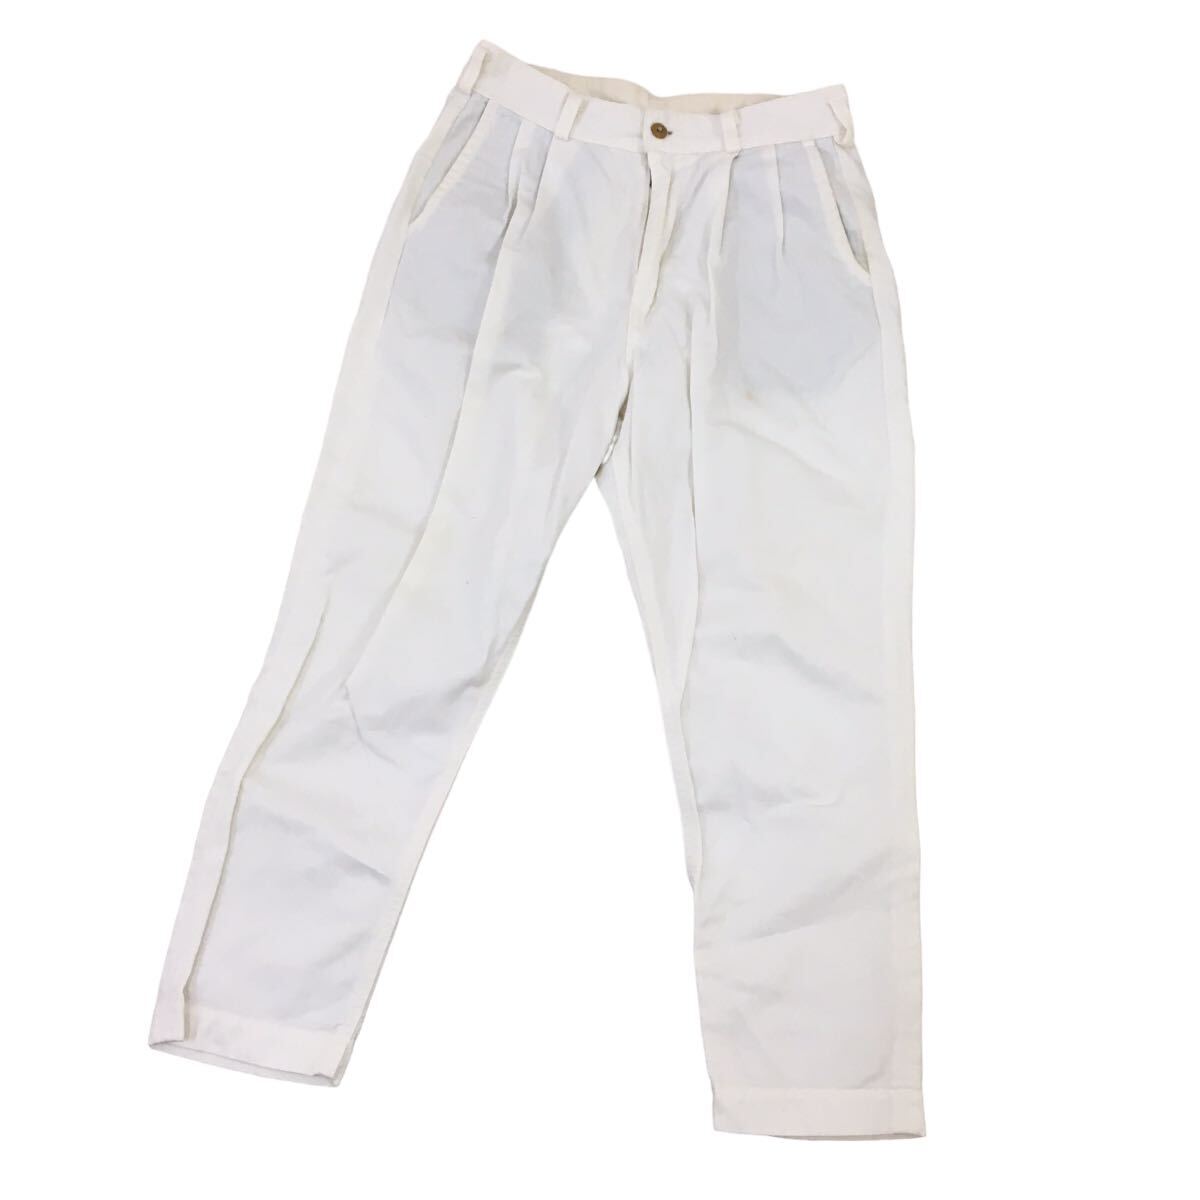 D523 日本製 orSlow オアスロウ パンツ ズボン ボトムス ホワイトパンツ コットン 綿100% ホワイト メンズ S_画像1